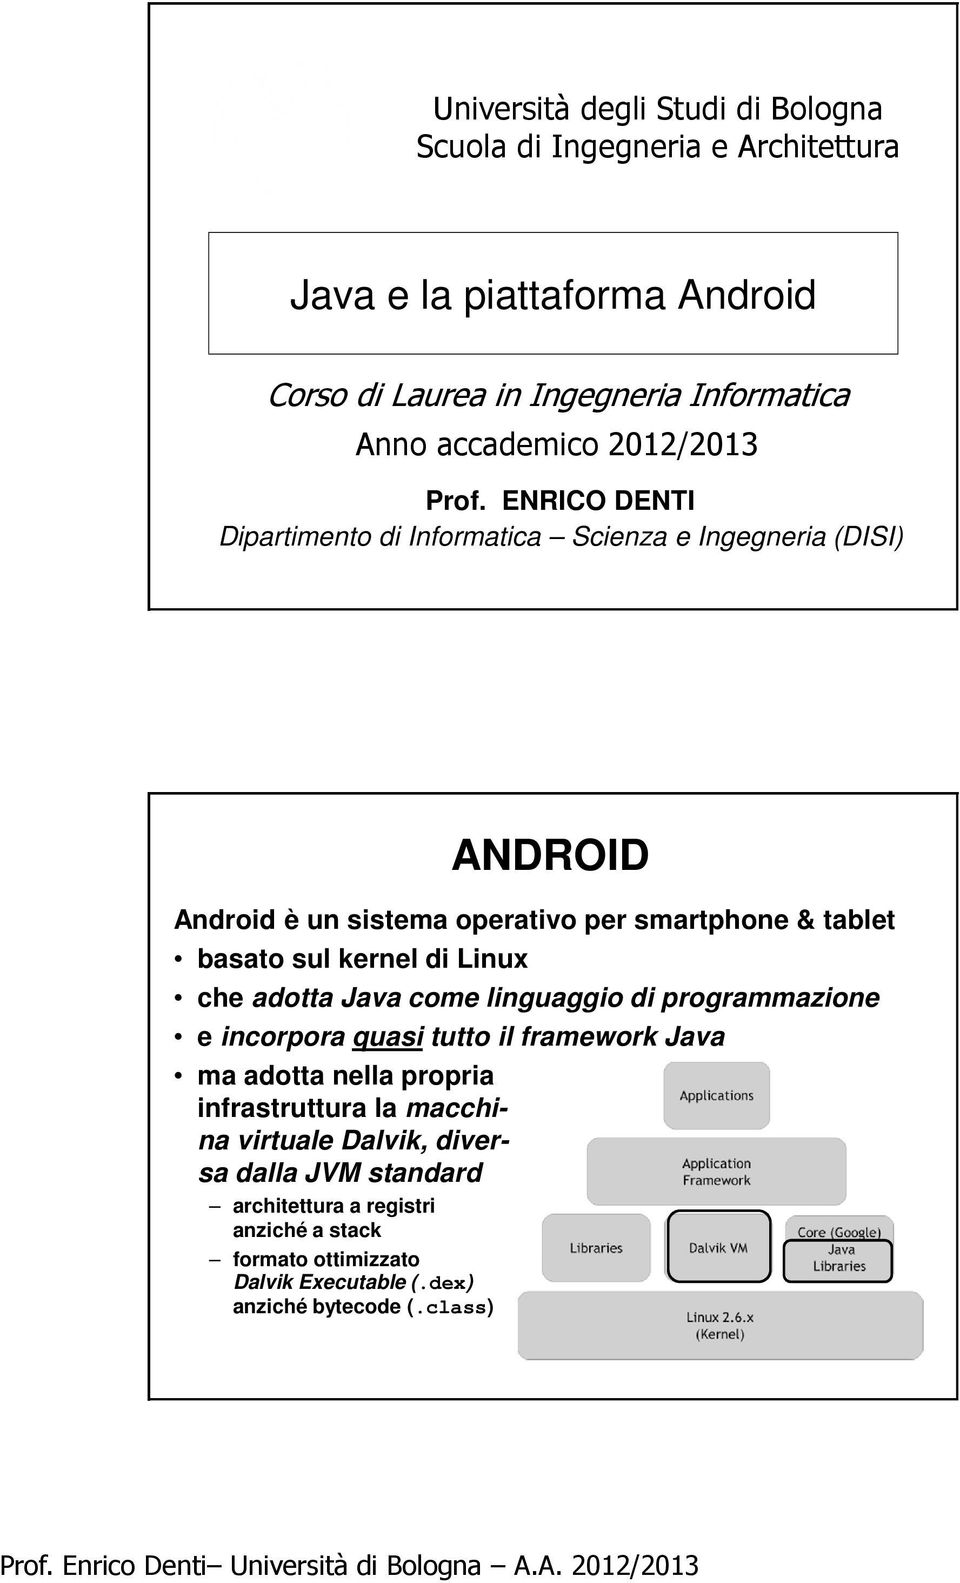 ENRICO DENTI Dipartimento di Informatica Scienza e Ingegneria (DISI) ANDROID Android è un sistema operativo per smartphone & tablet basato sul kernel di